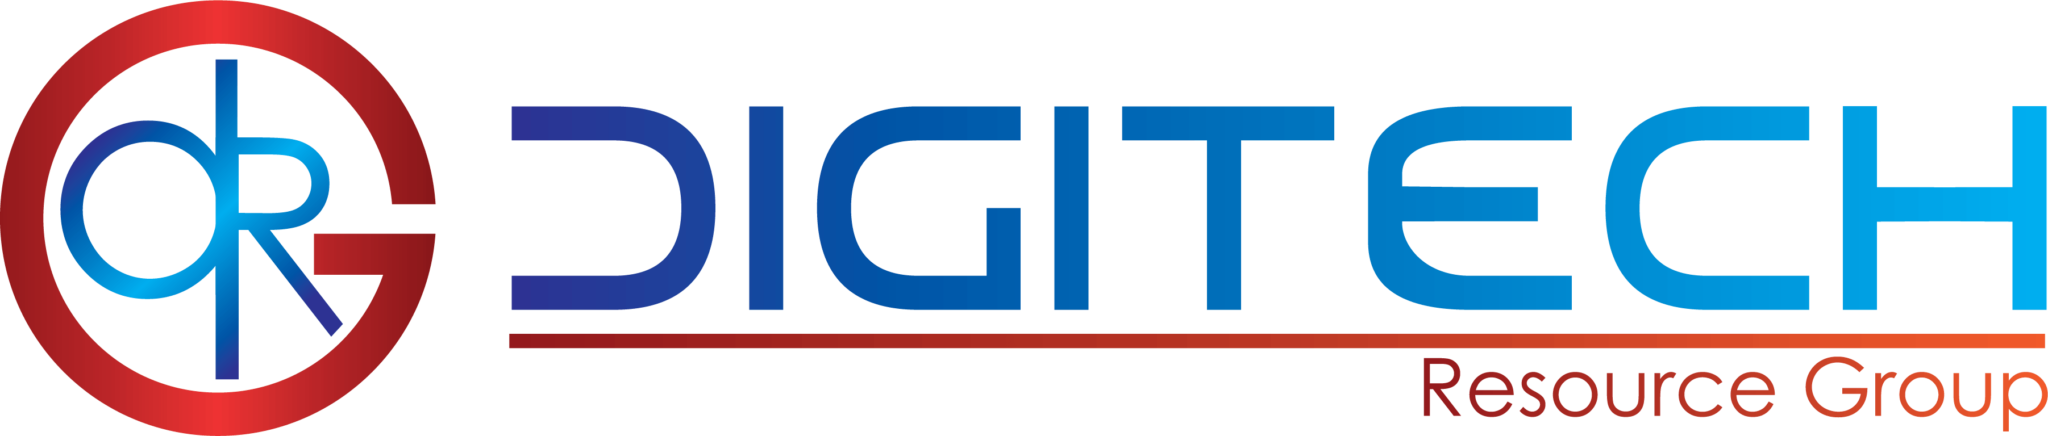 digitech logo